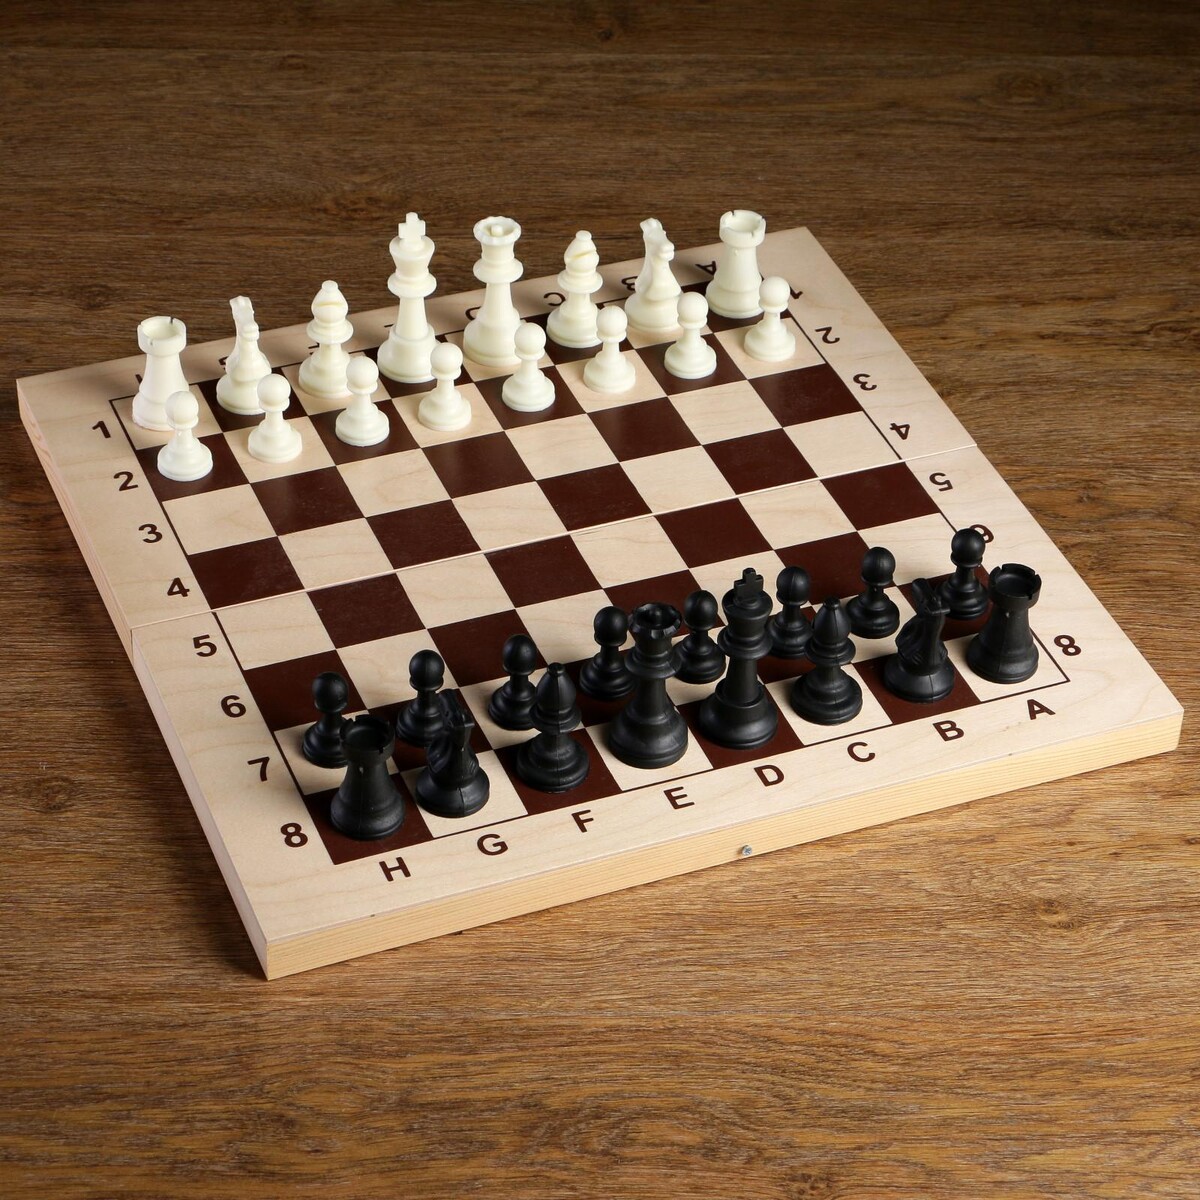 Шахматные фигуры, пластик, король h-9 см, пешка h-4.1 см король крыс